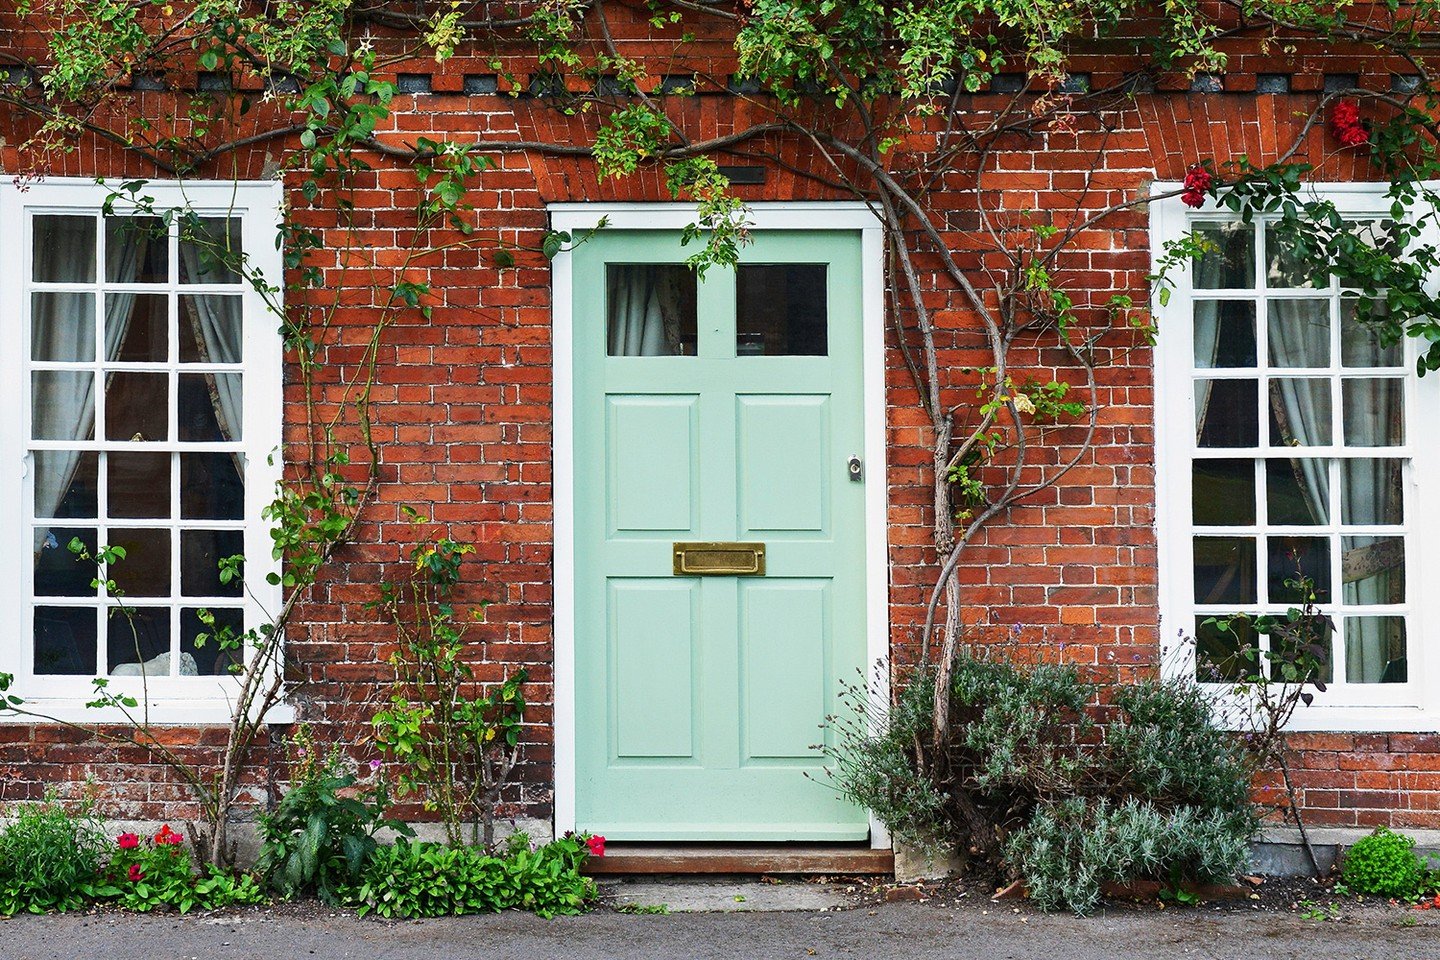 Green front door of brick house